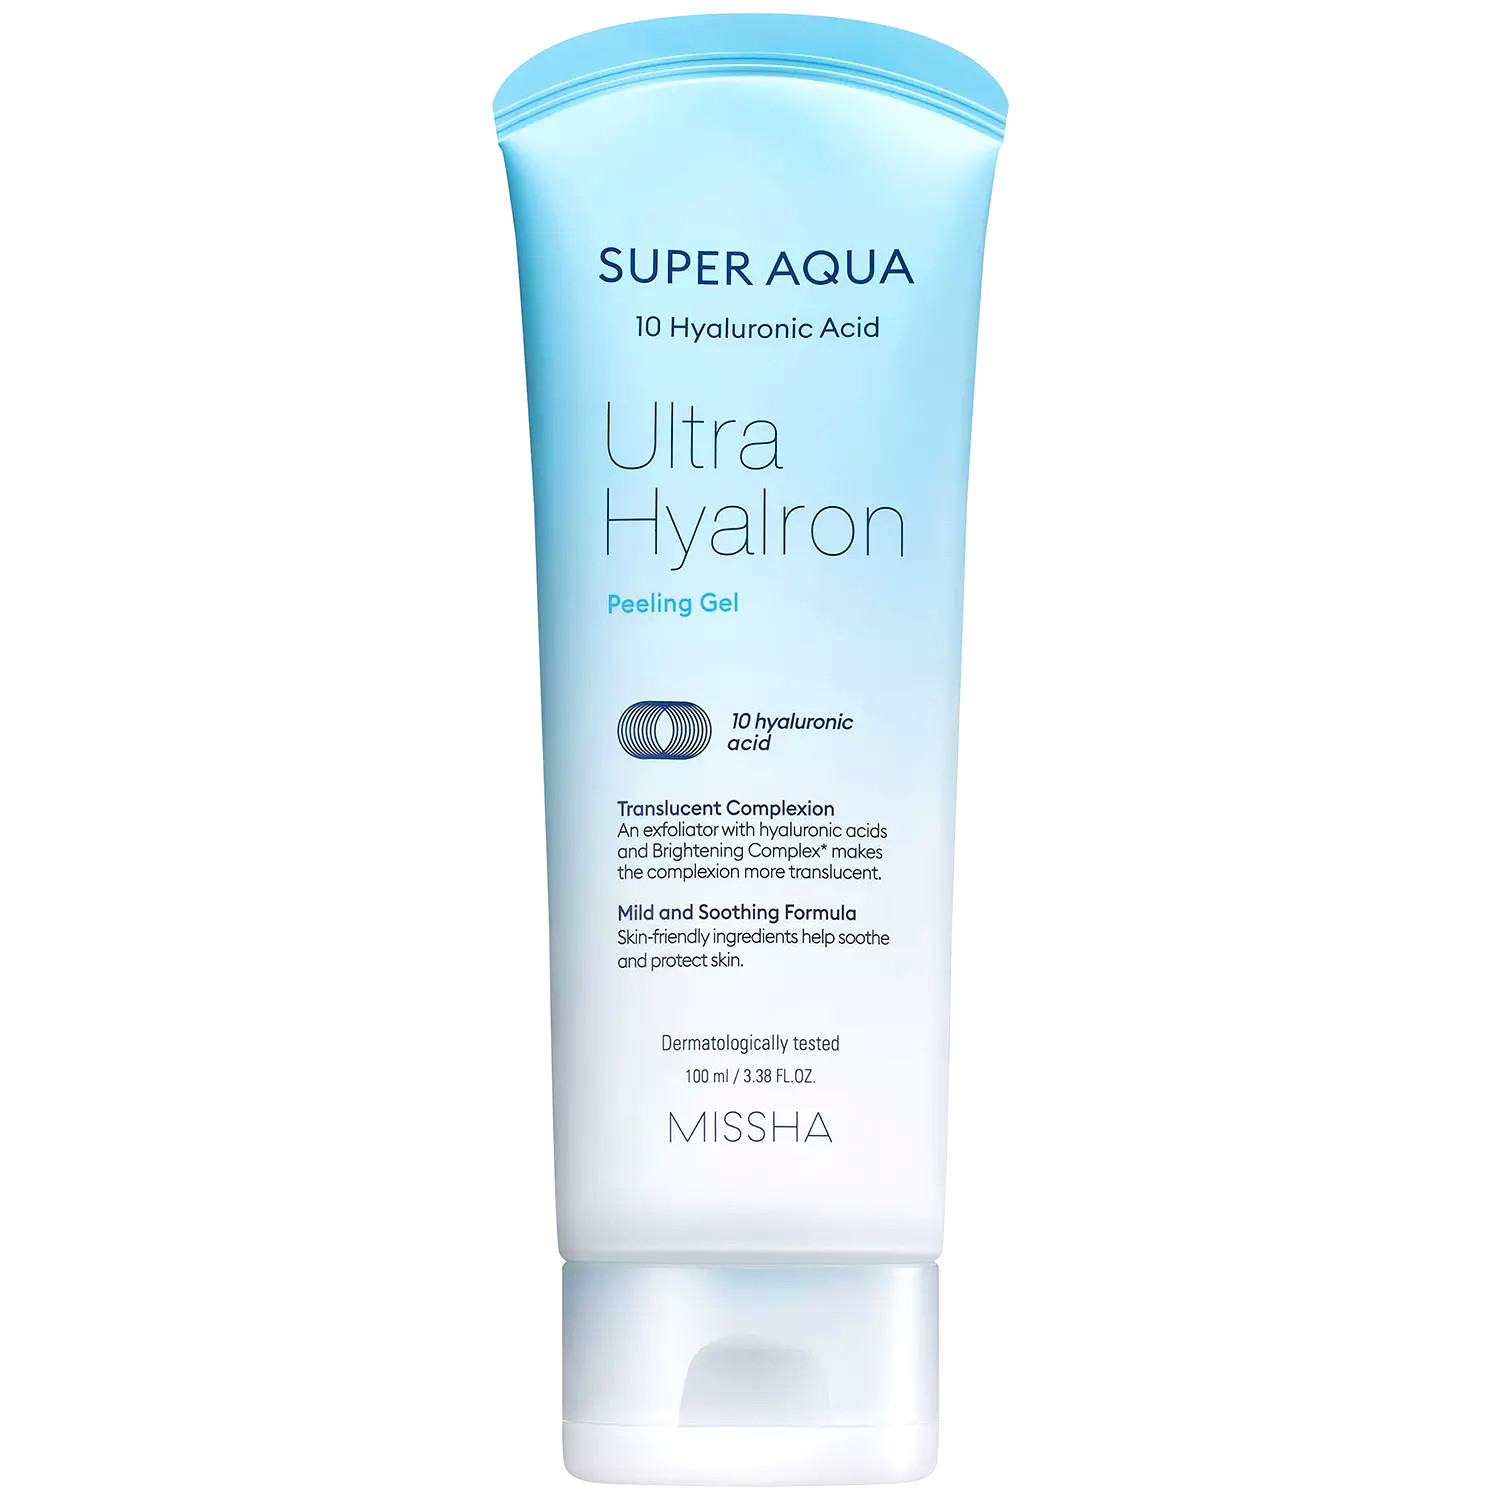 Пилинг-гель с гиалуроновой кислотой для лица MISSHA Super Aqua Ultra Hyalron Peeling Gel fillerina дневной крем для лица с укрепляющим эффектом уровень 3 50 мл